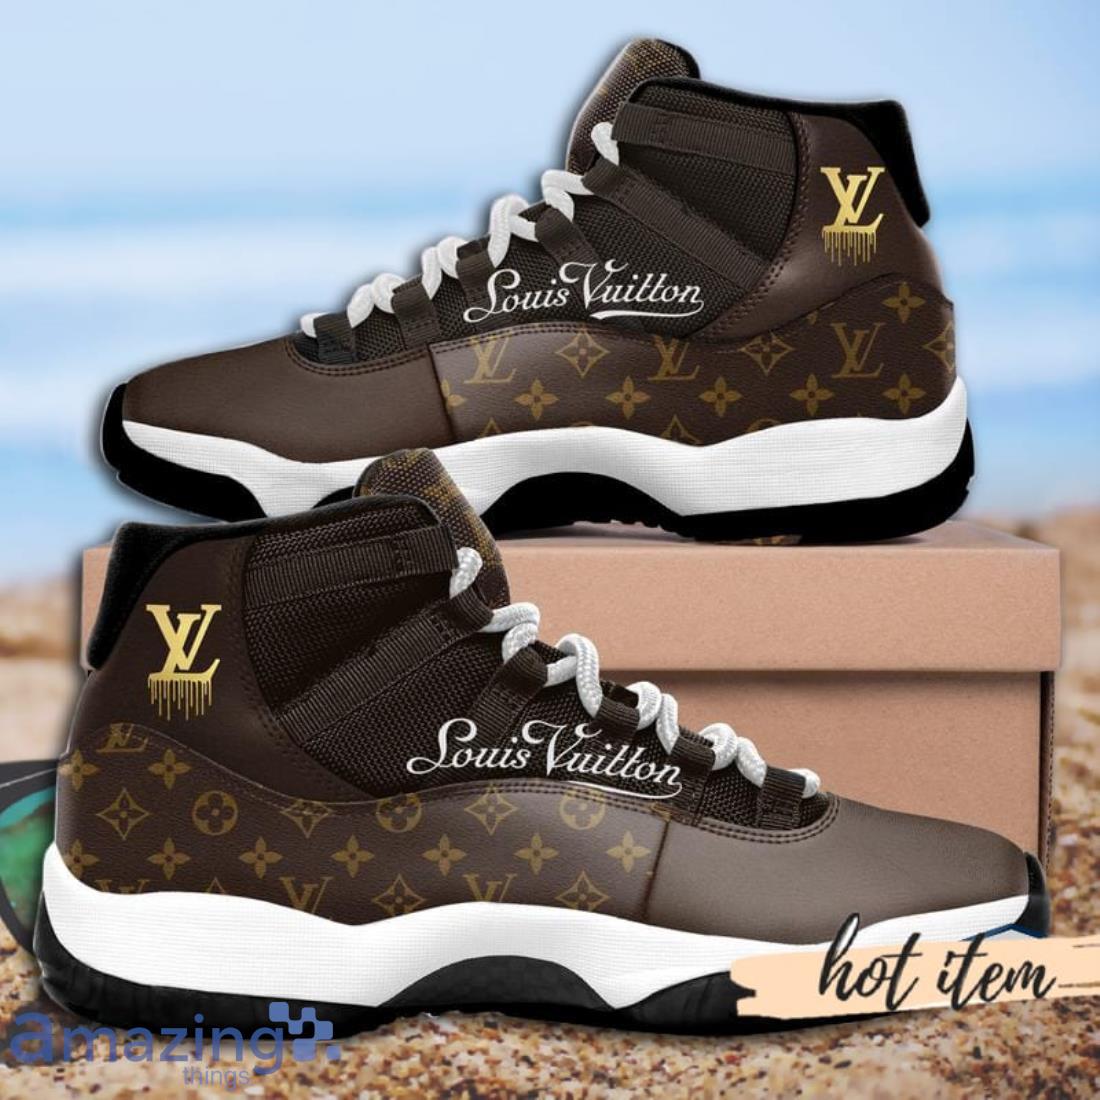 HOT] Louis Vuitton Gold Air Jordan 11 Sneakers